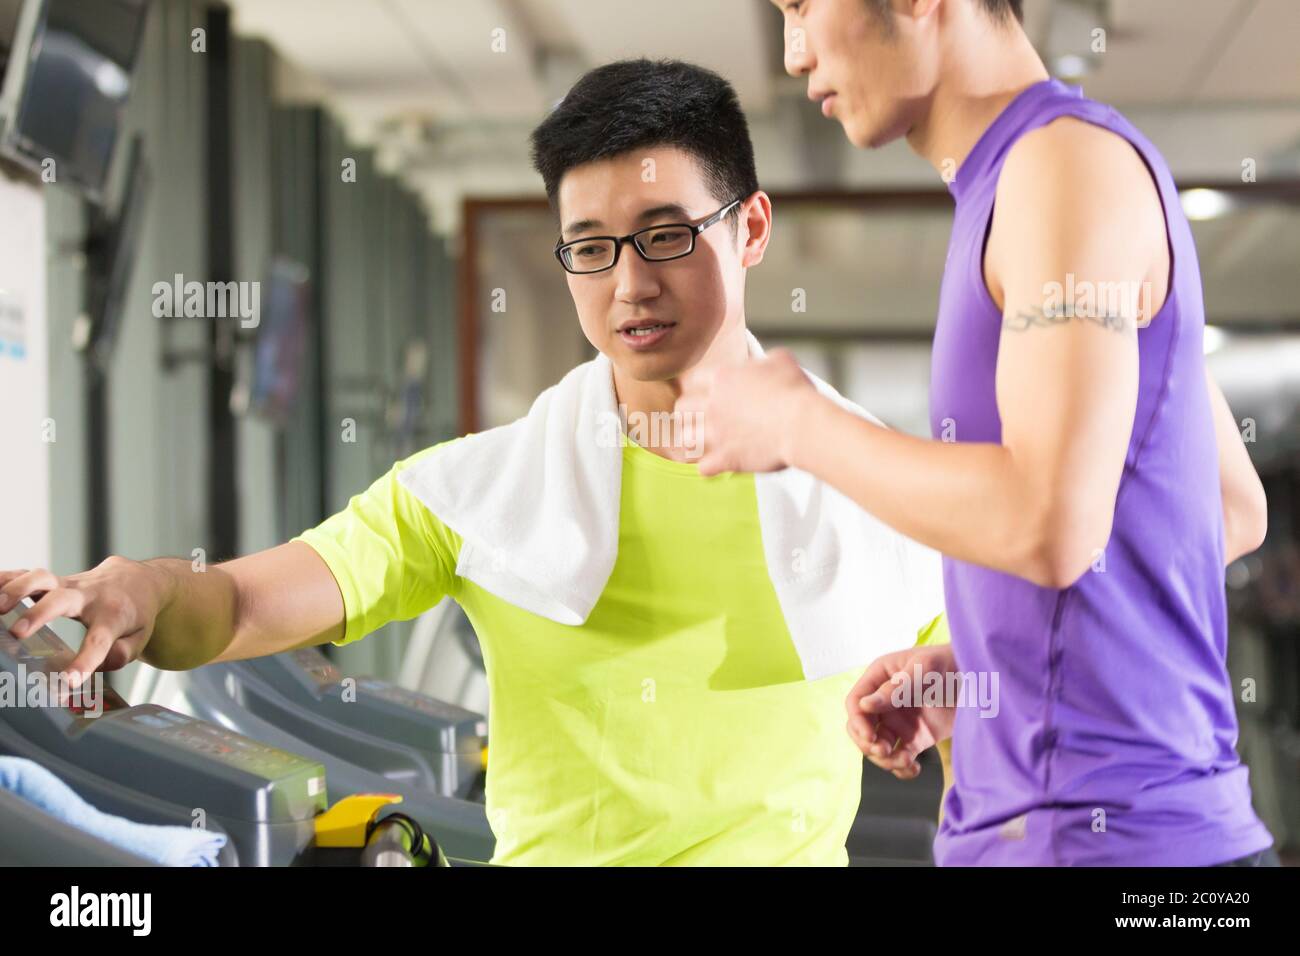 Junge asiatische Männer und trainieren Sie im modernen Fitnessraum Stockfoto